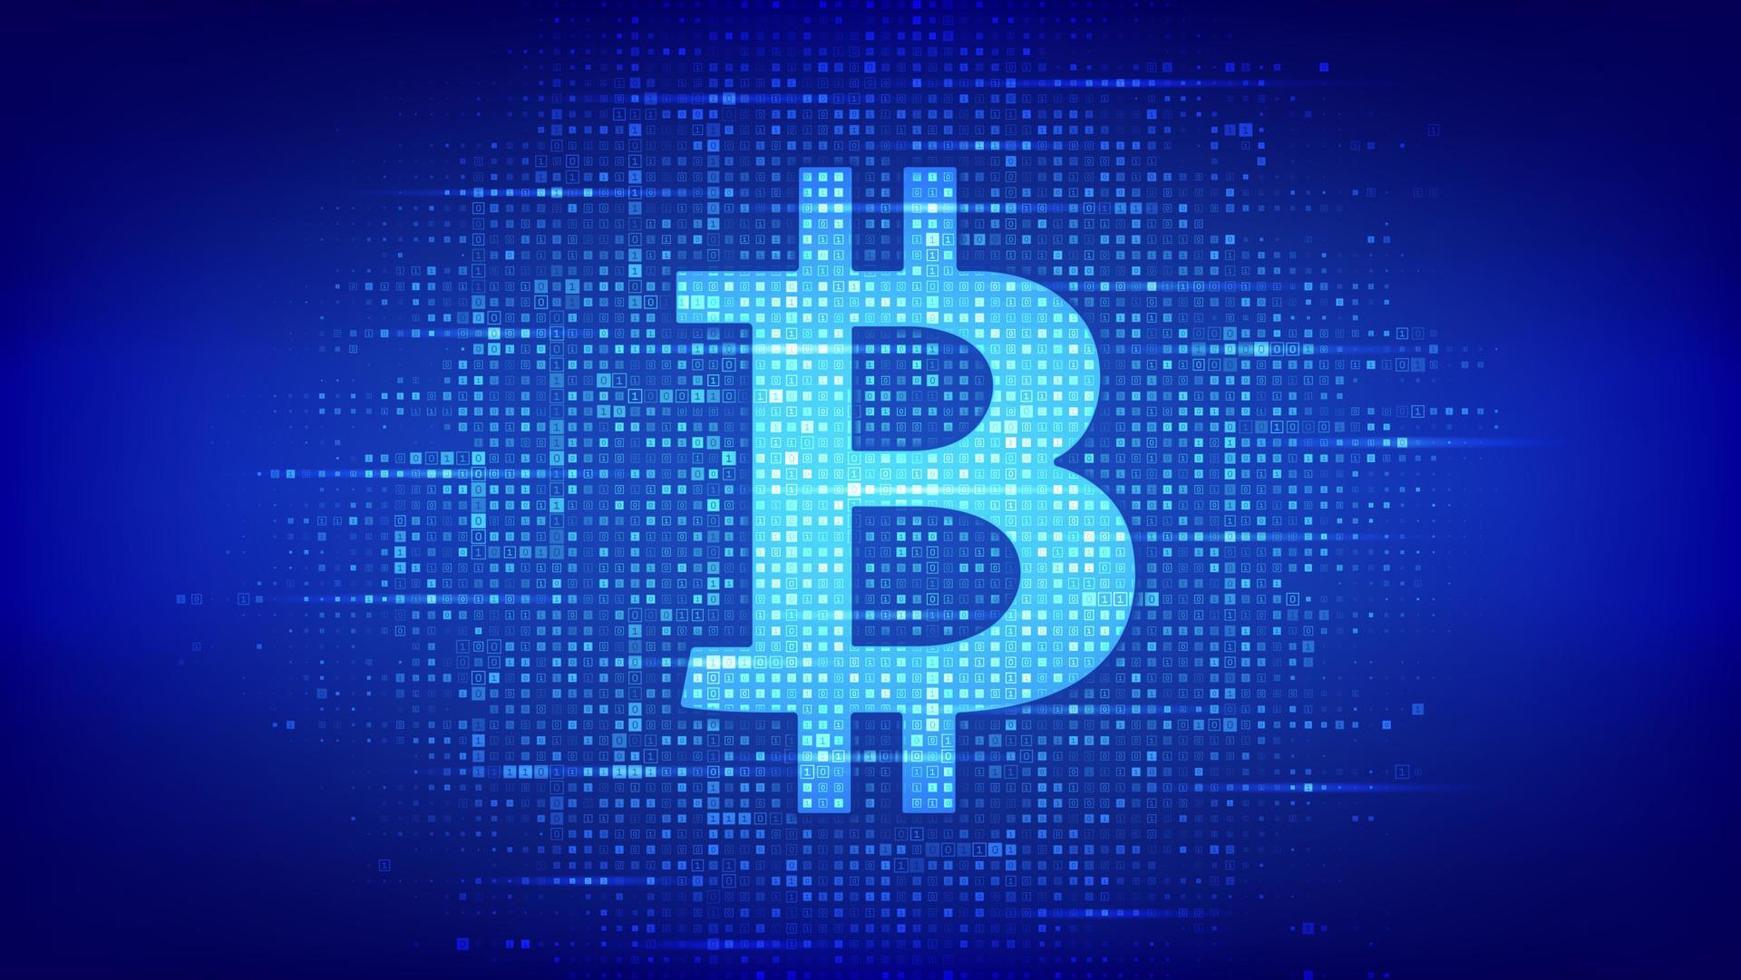 bitcoin-pictogram gemaakt met binaire code. blockchain-technologie. bitcoin digitale cryptocurrency teken. abstract e-commerce en betalingsconcept. digitale codeachtergrond met cijfers 1.0. vectorillustratie. vector